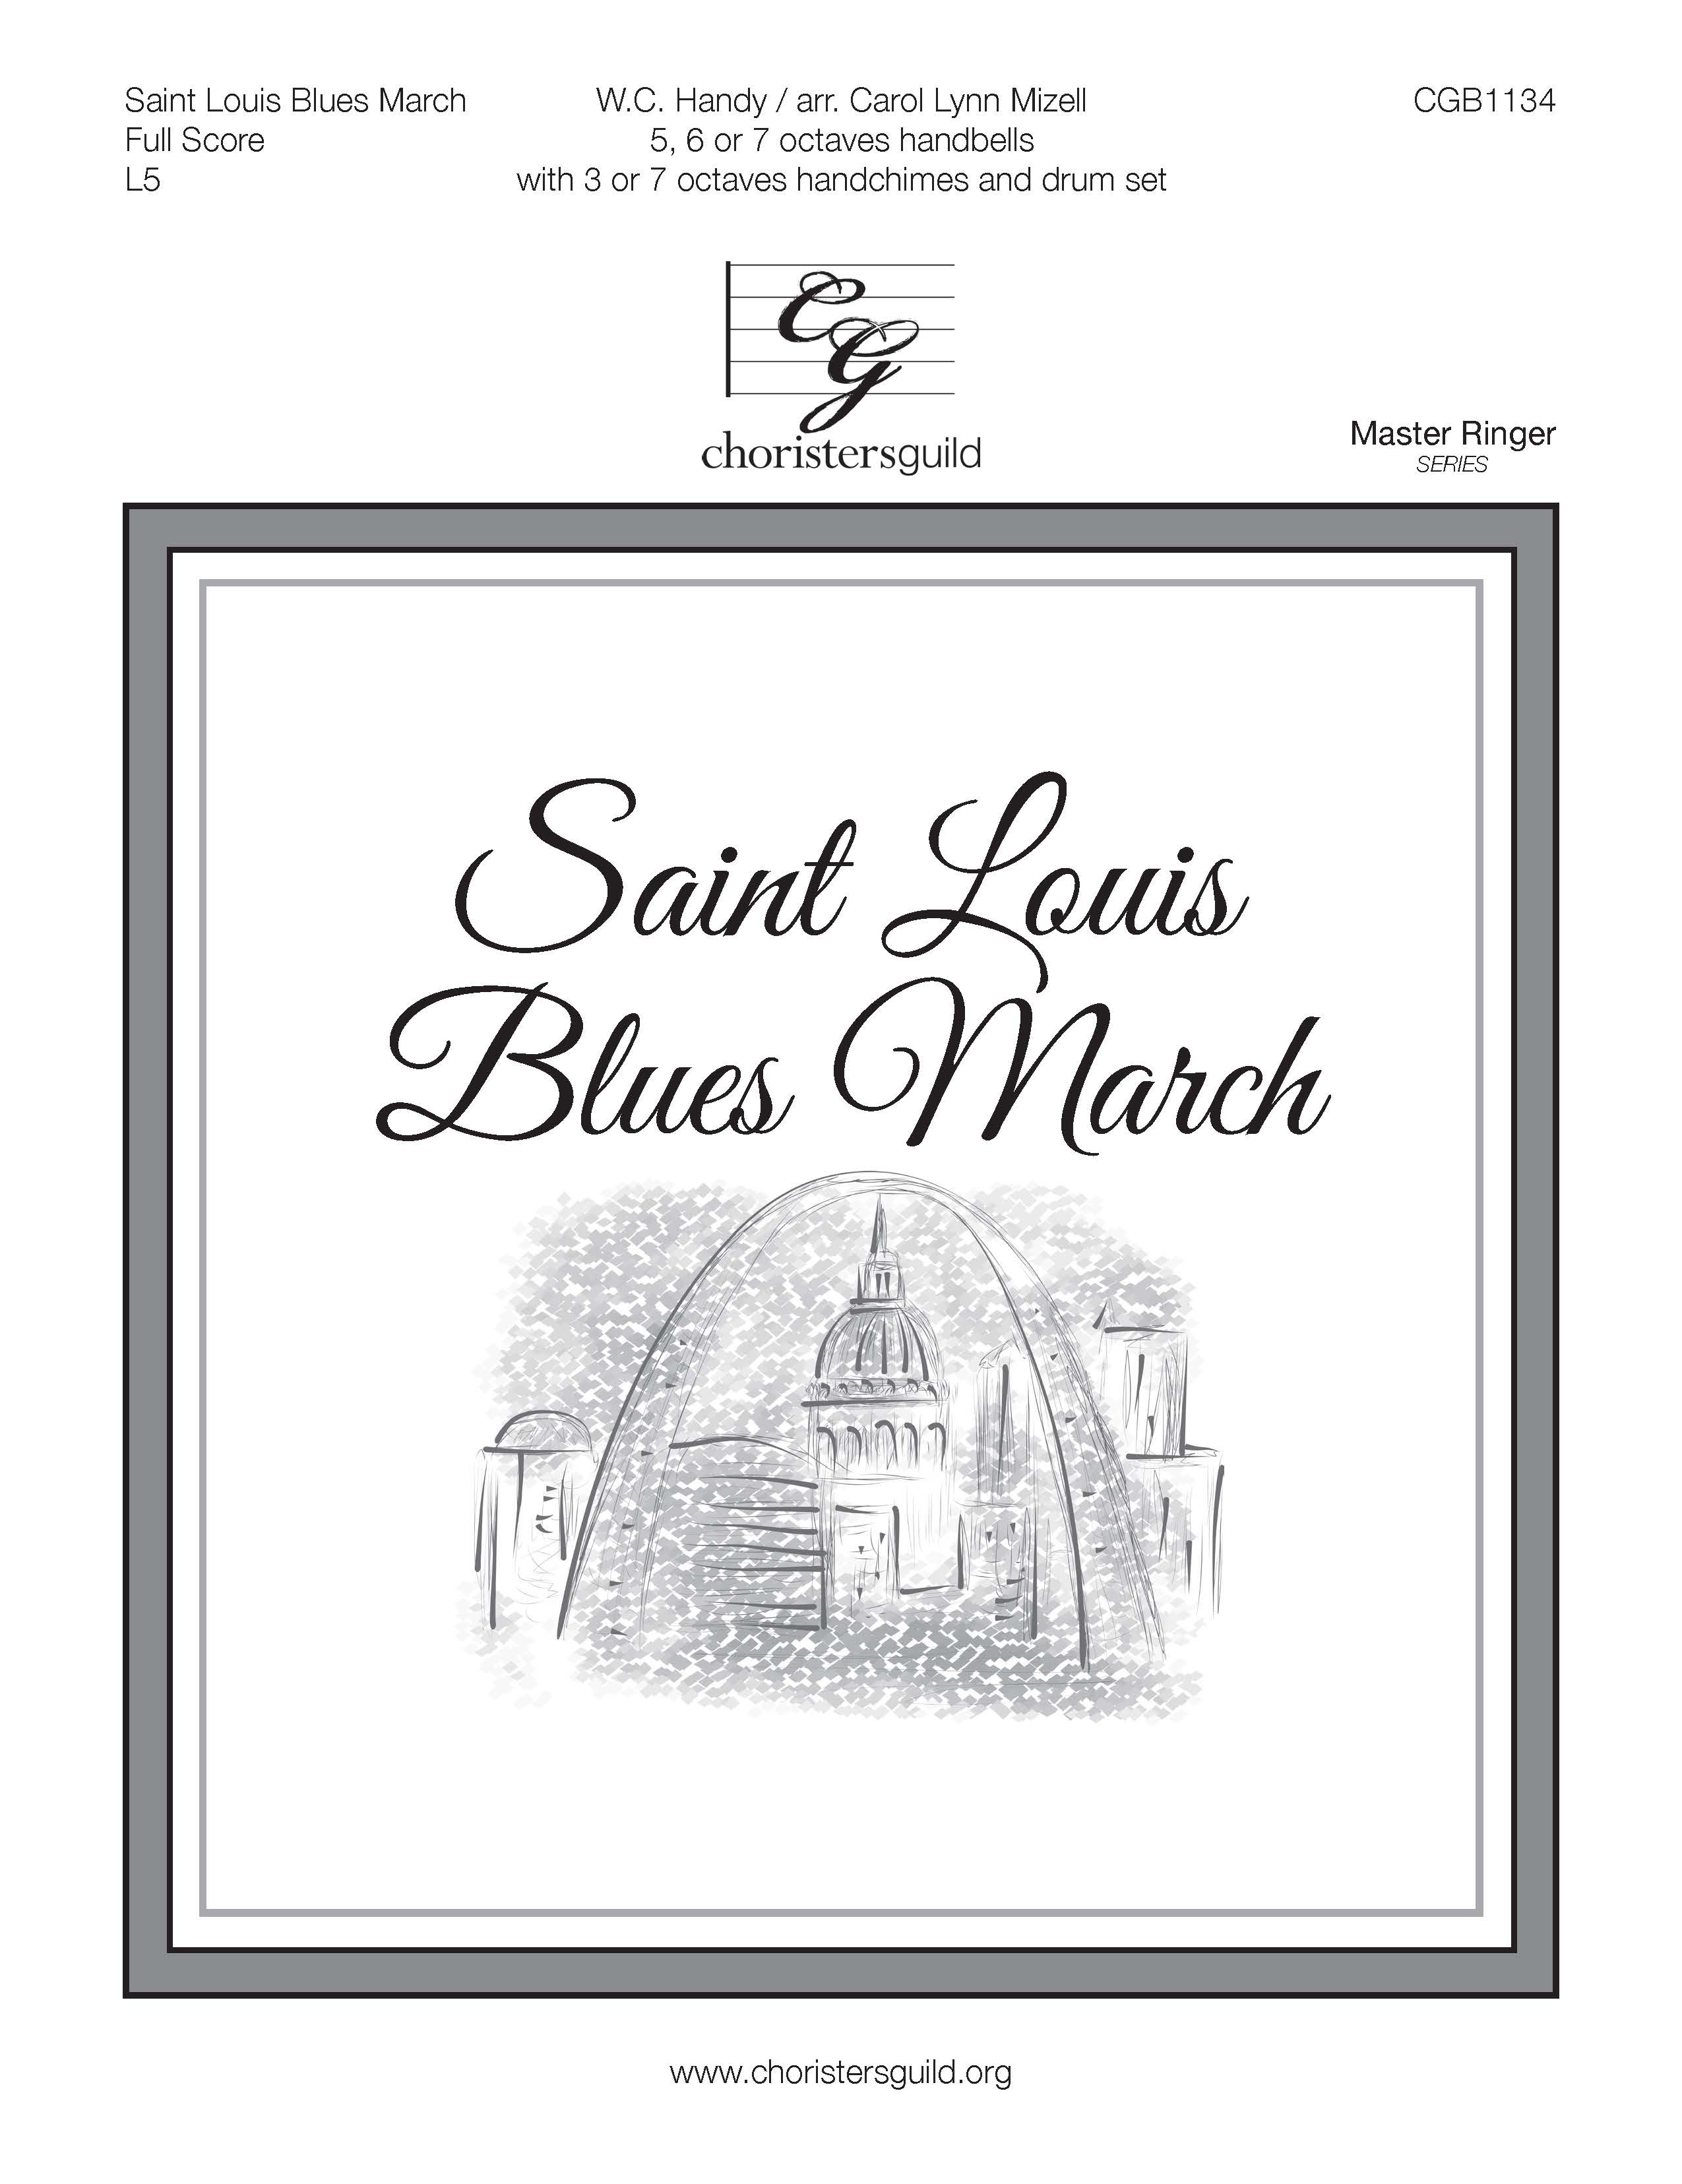 Saint Louis Blues March - Full Score